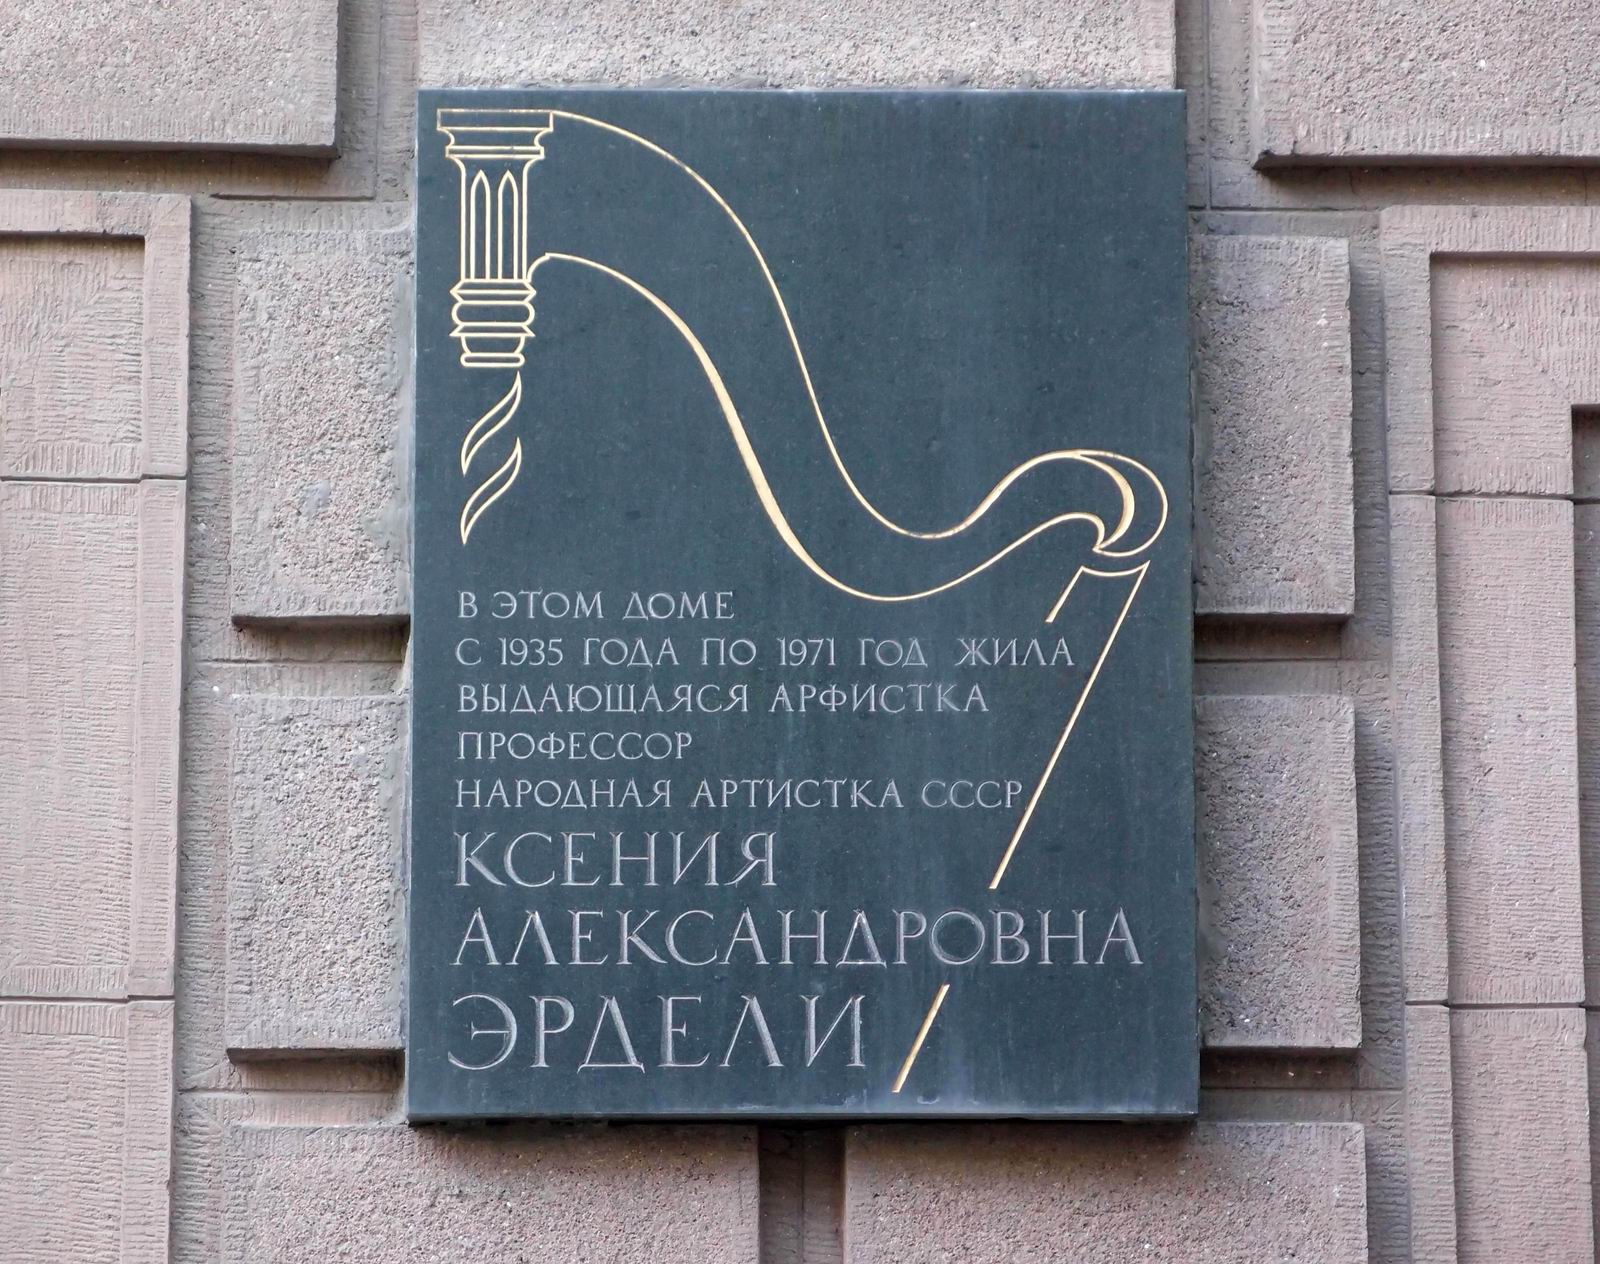 Мемориальная доска Эрдели К.А. (1878-1971), арх. Н.Н.Рослова, в Брюсовом переулке, дом 7, открыта в 1988.